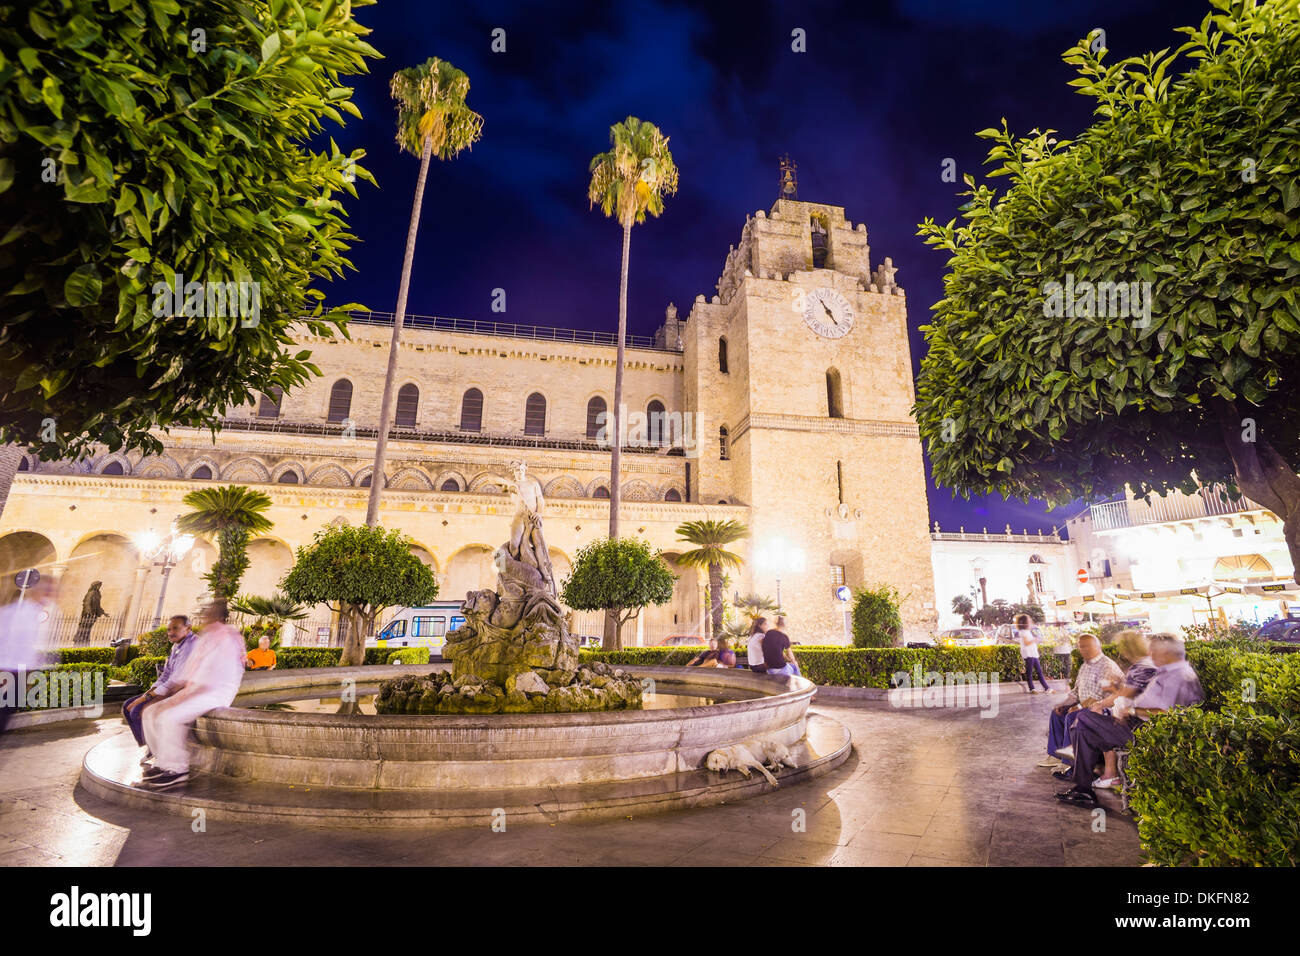 Cathédrale de Monreale la nuit, les gens à la fontaine sicilien Guglielmo dans Square, Monreale, près de Palerme, Sicile, Italie, Europe Banque D'Images